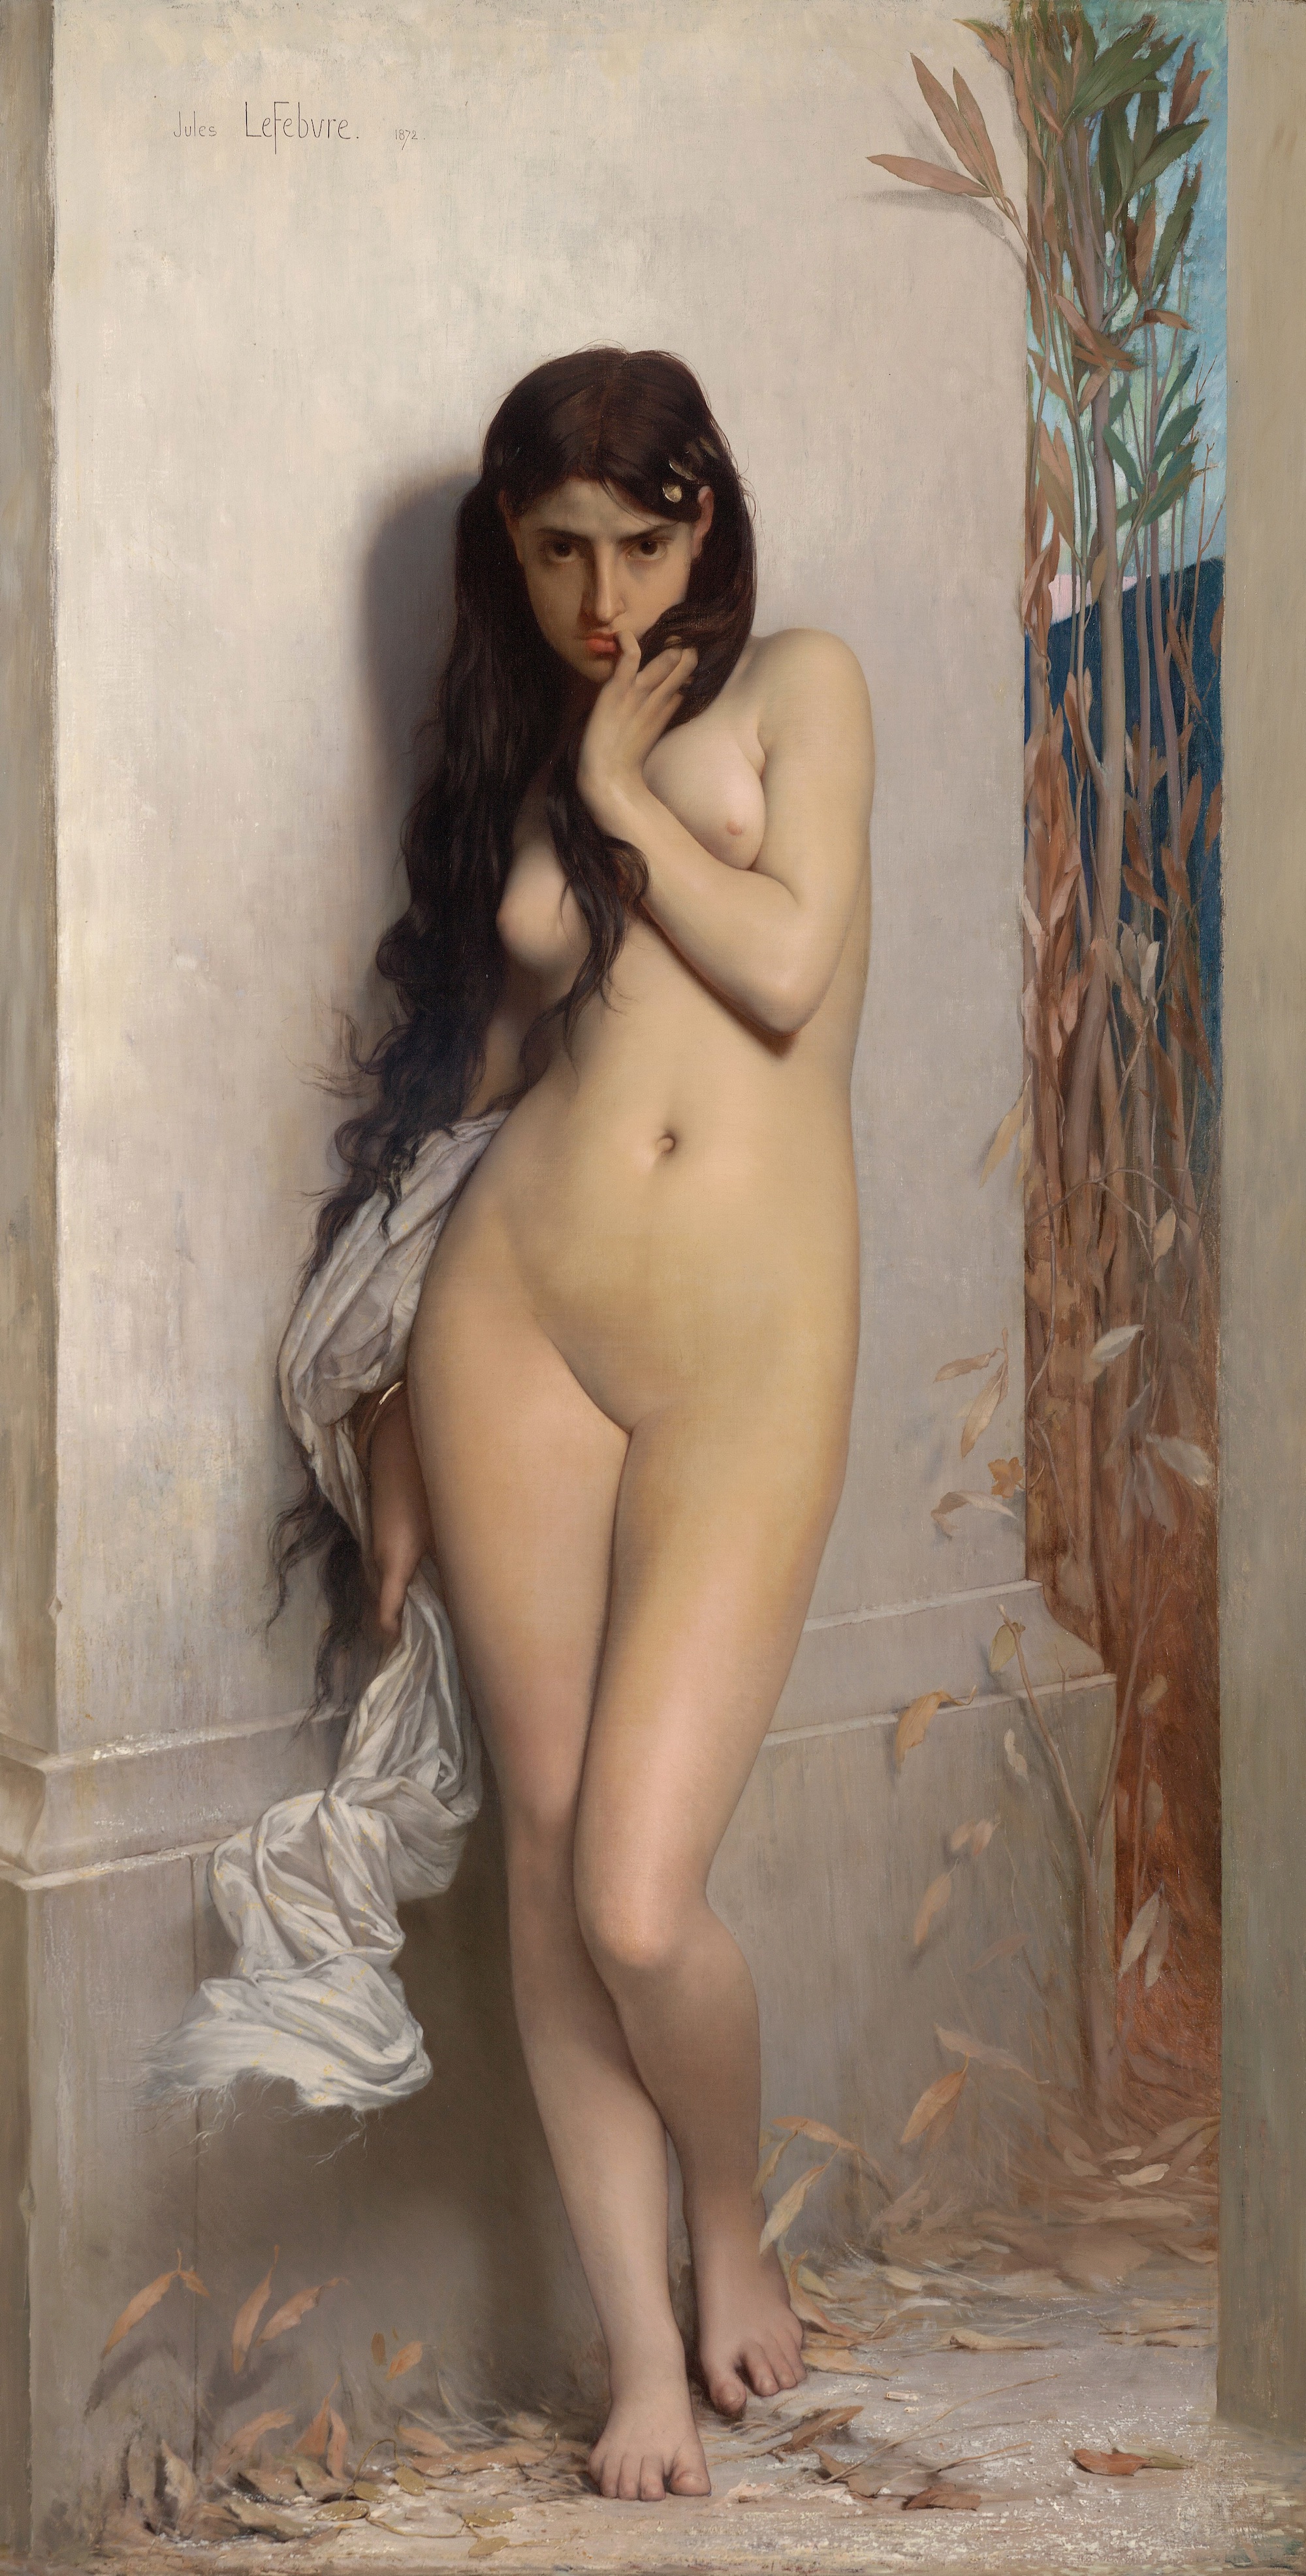 キリギリス (蝉) by Jules Lefebvre - 1872年 - 123.8 cm x 186.7 cm 